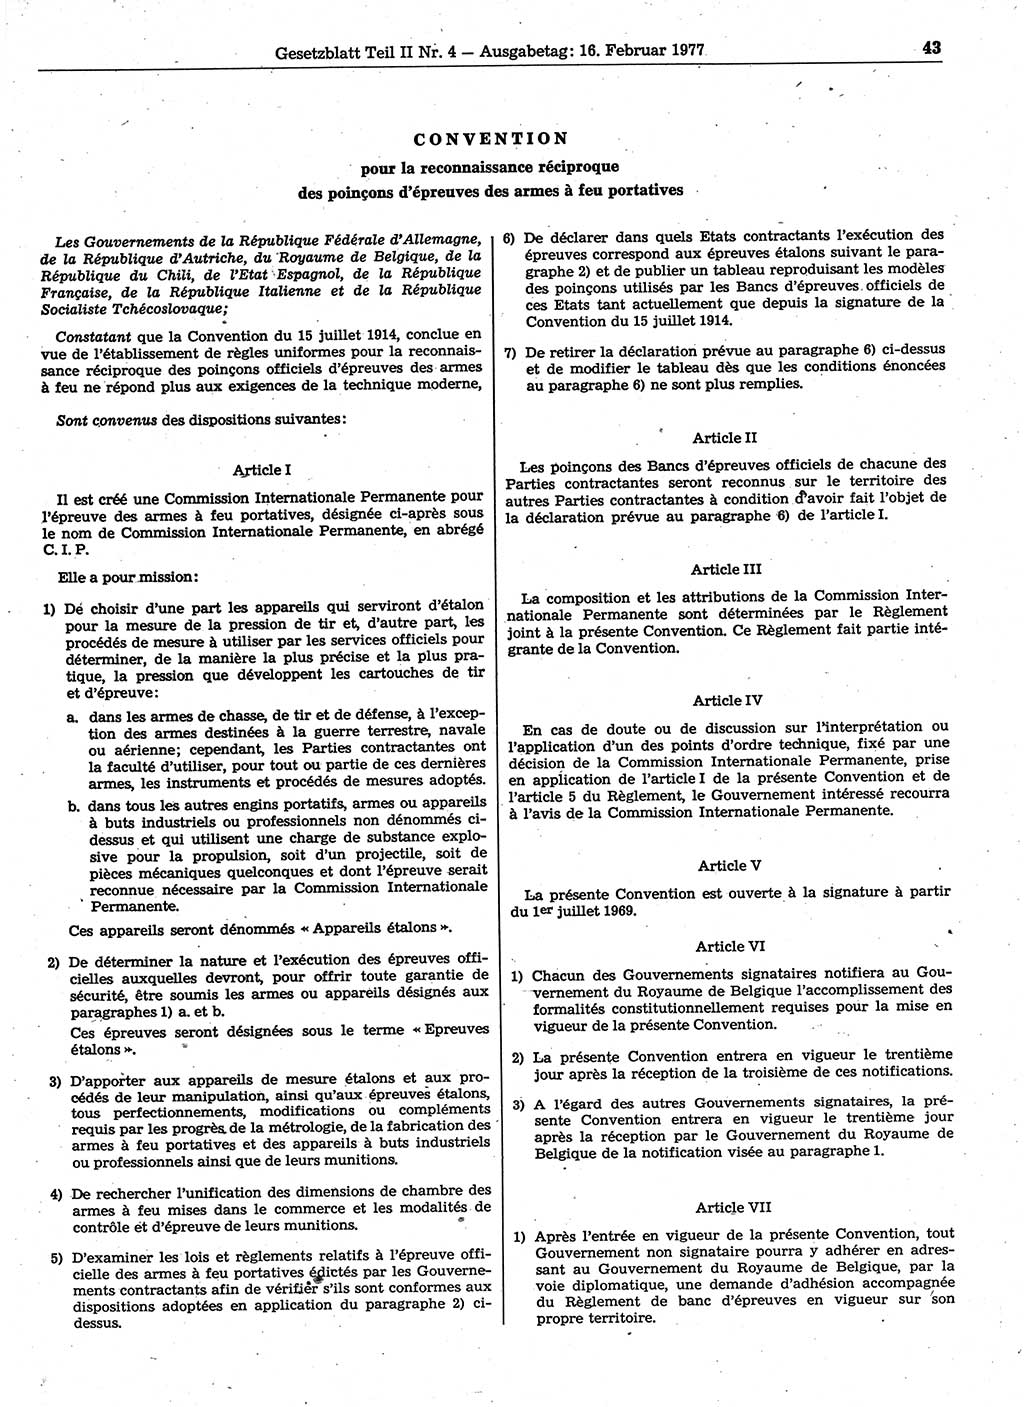 Gesetzblatt (GBl.) der Deutschen Demokratischen Republik (DDR) Teil ⅠⅠ 1977, Seite 43 (GBl. DDR ⅠⅠ 1977, S. 43)